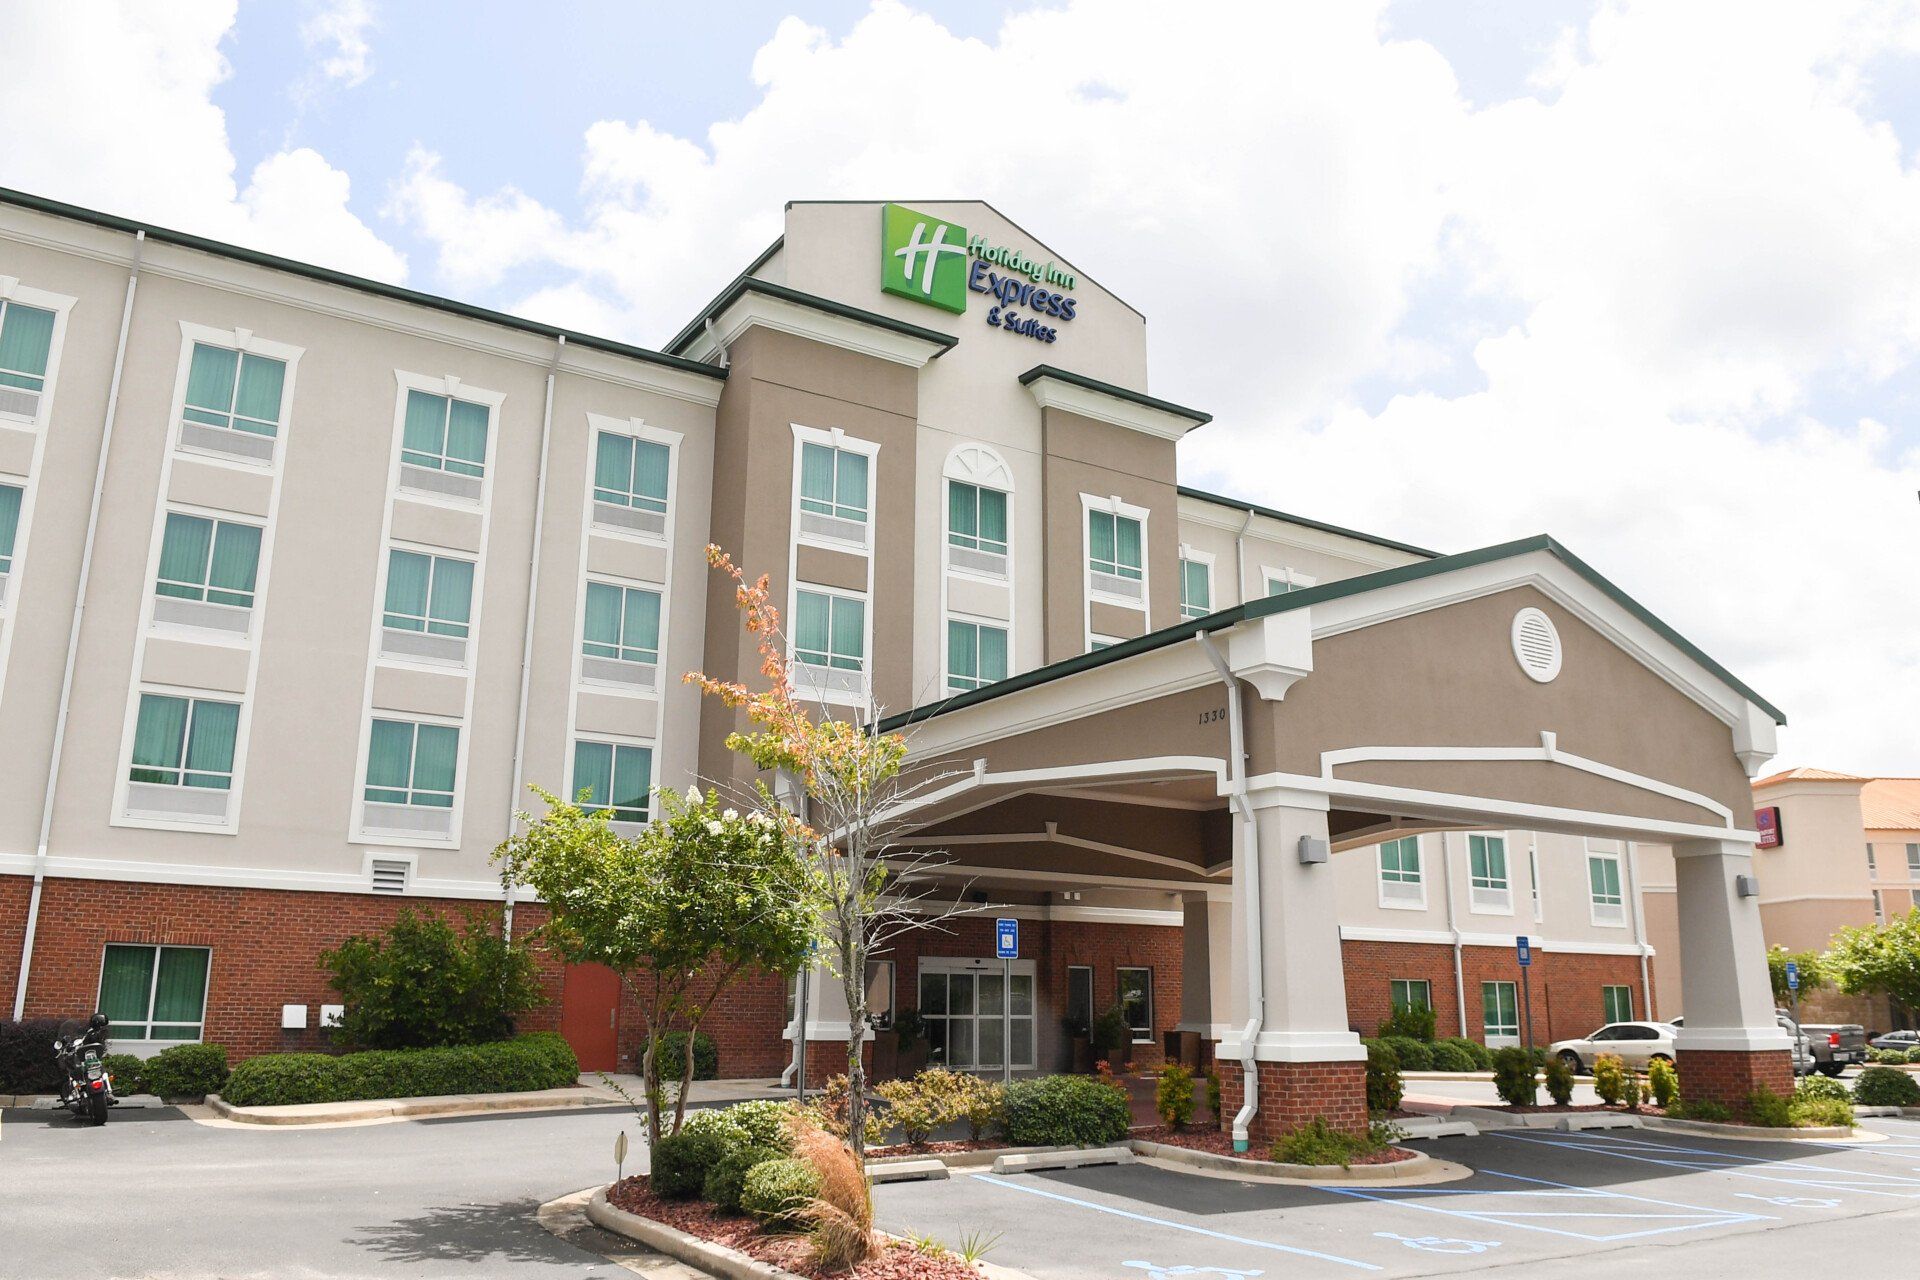 Holiday Inn Express of exit 18 in Valdosta, GA.